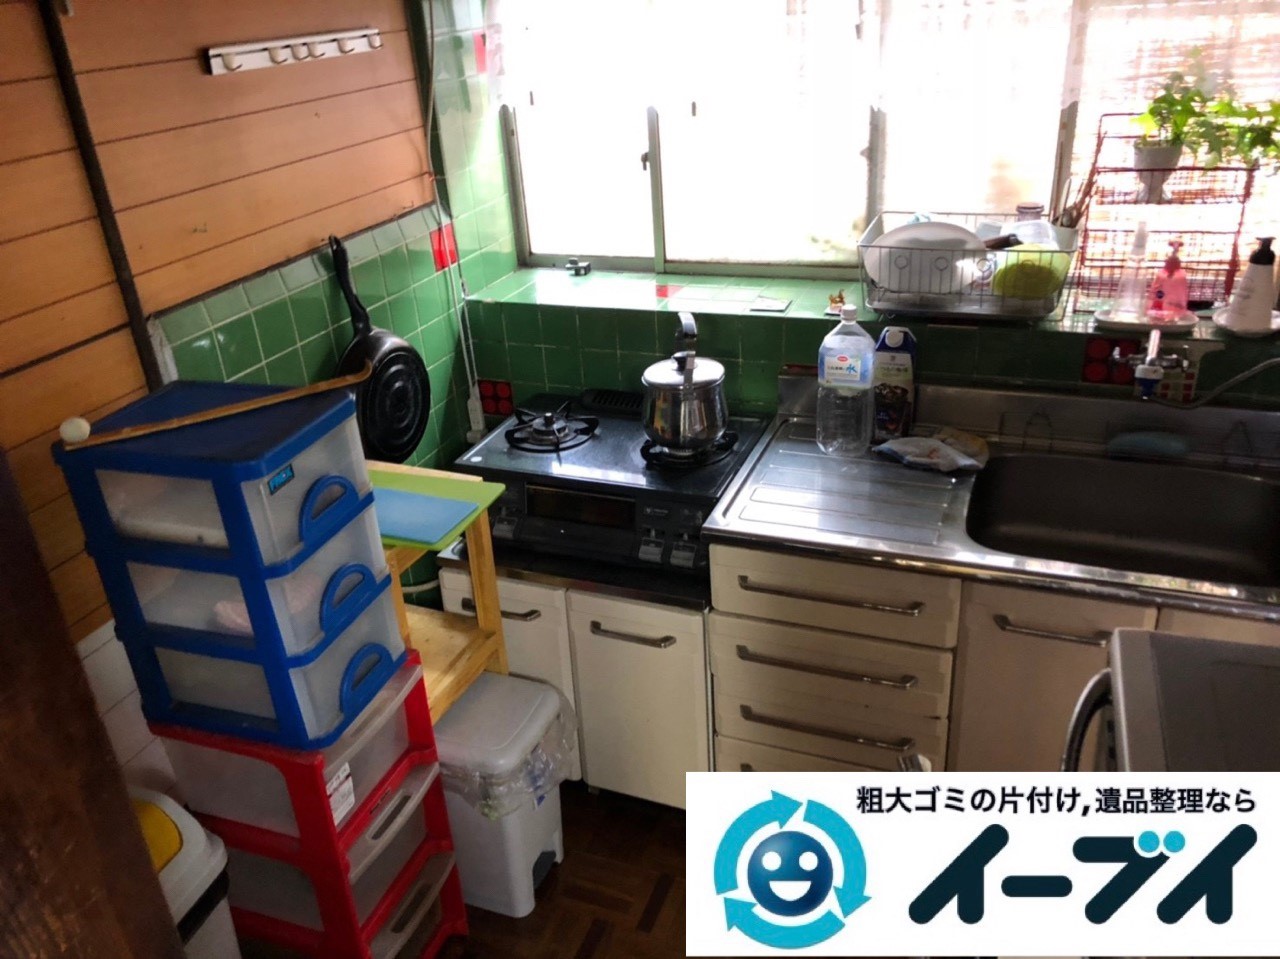 2018年11月30日大阪府大阪市旭区でガスコンロと電子レンジと食器棚の不用品回収をしました。写真4